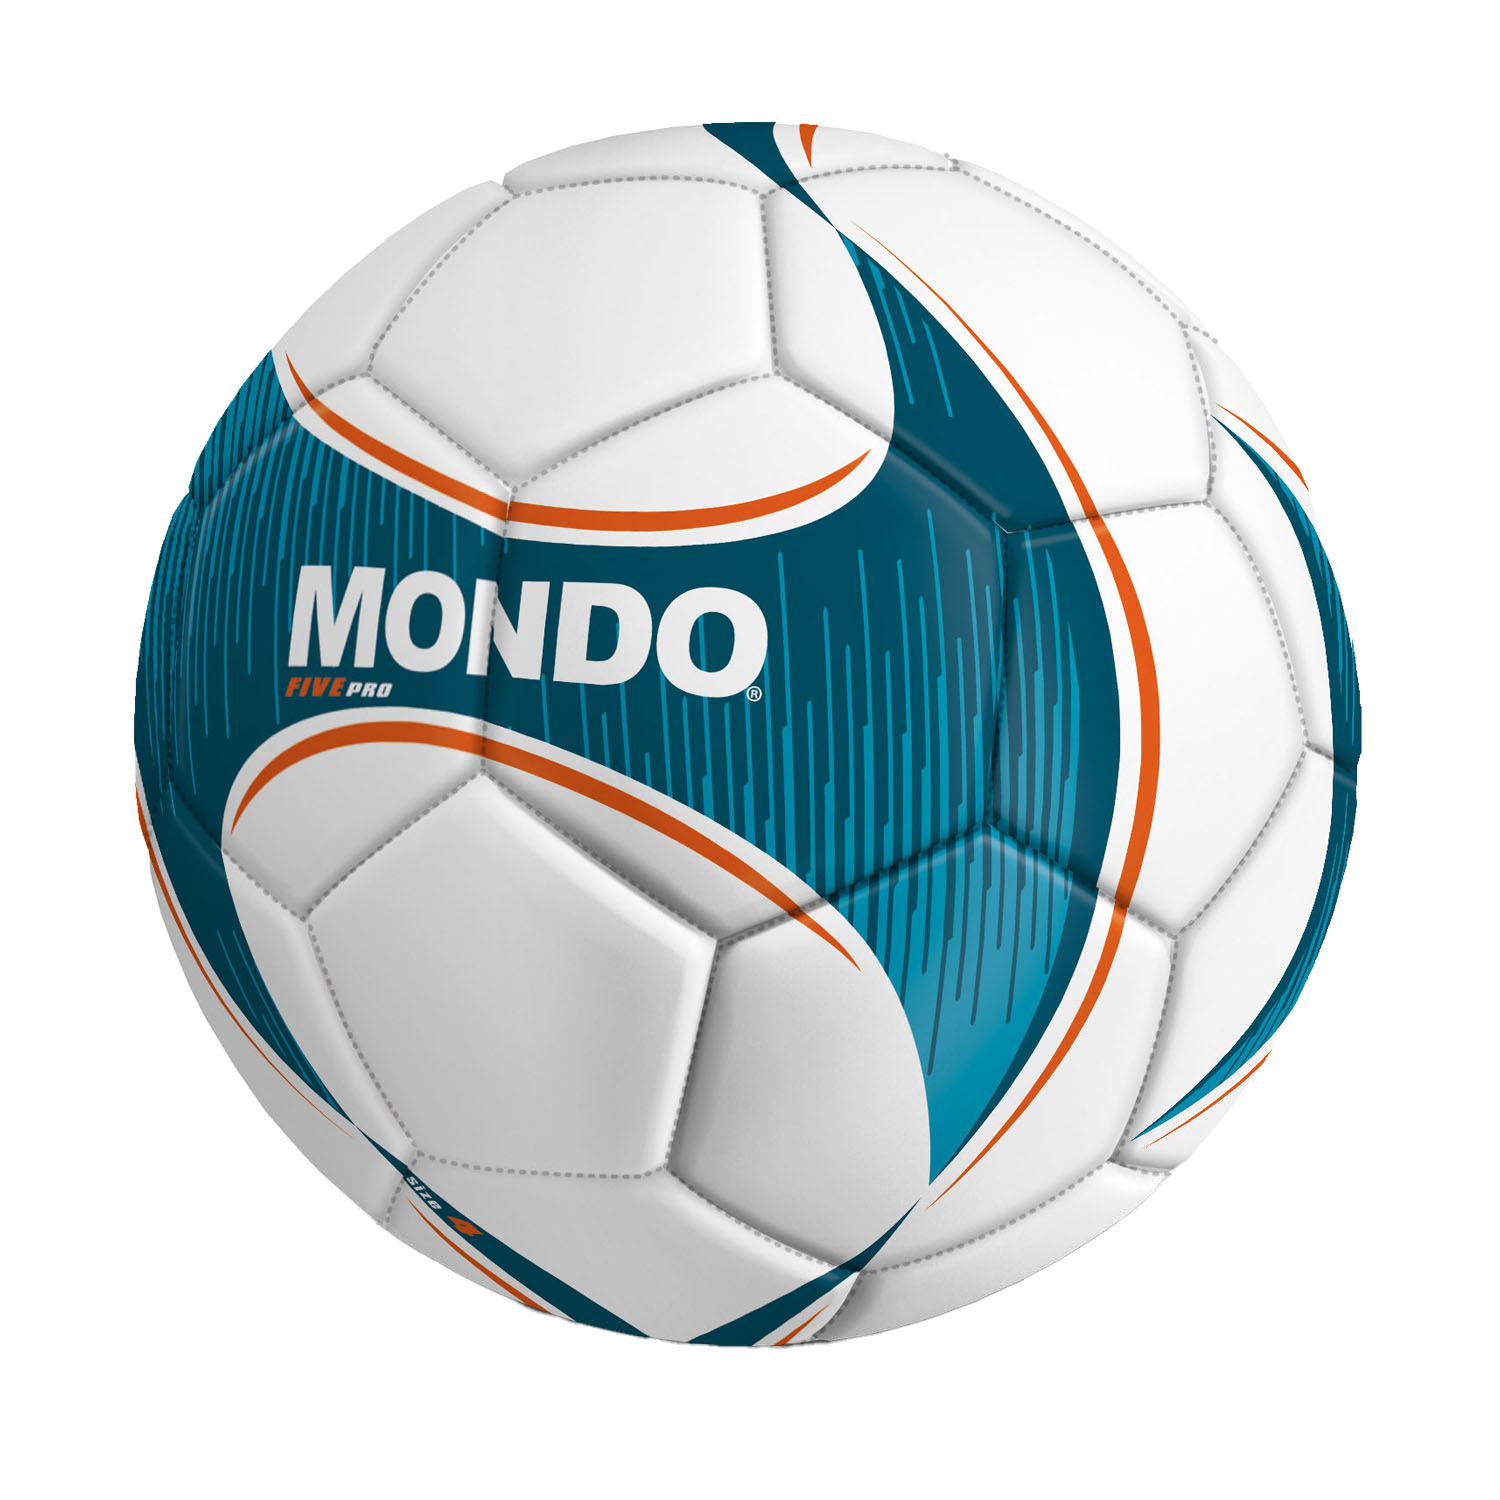 Mondo Voetbal Five Pro, 21,5cm